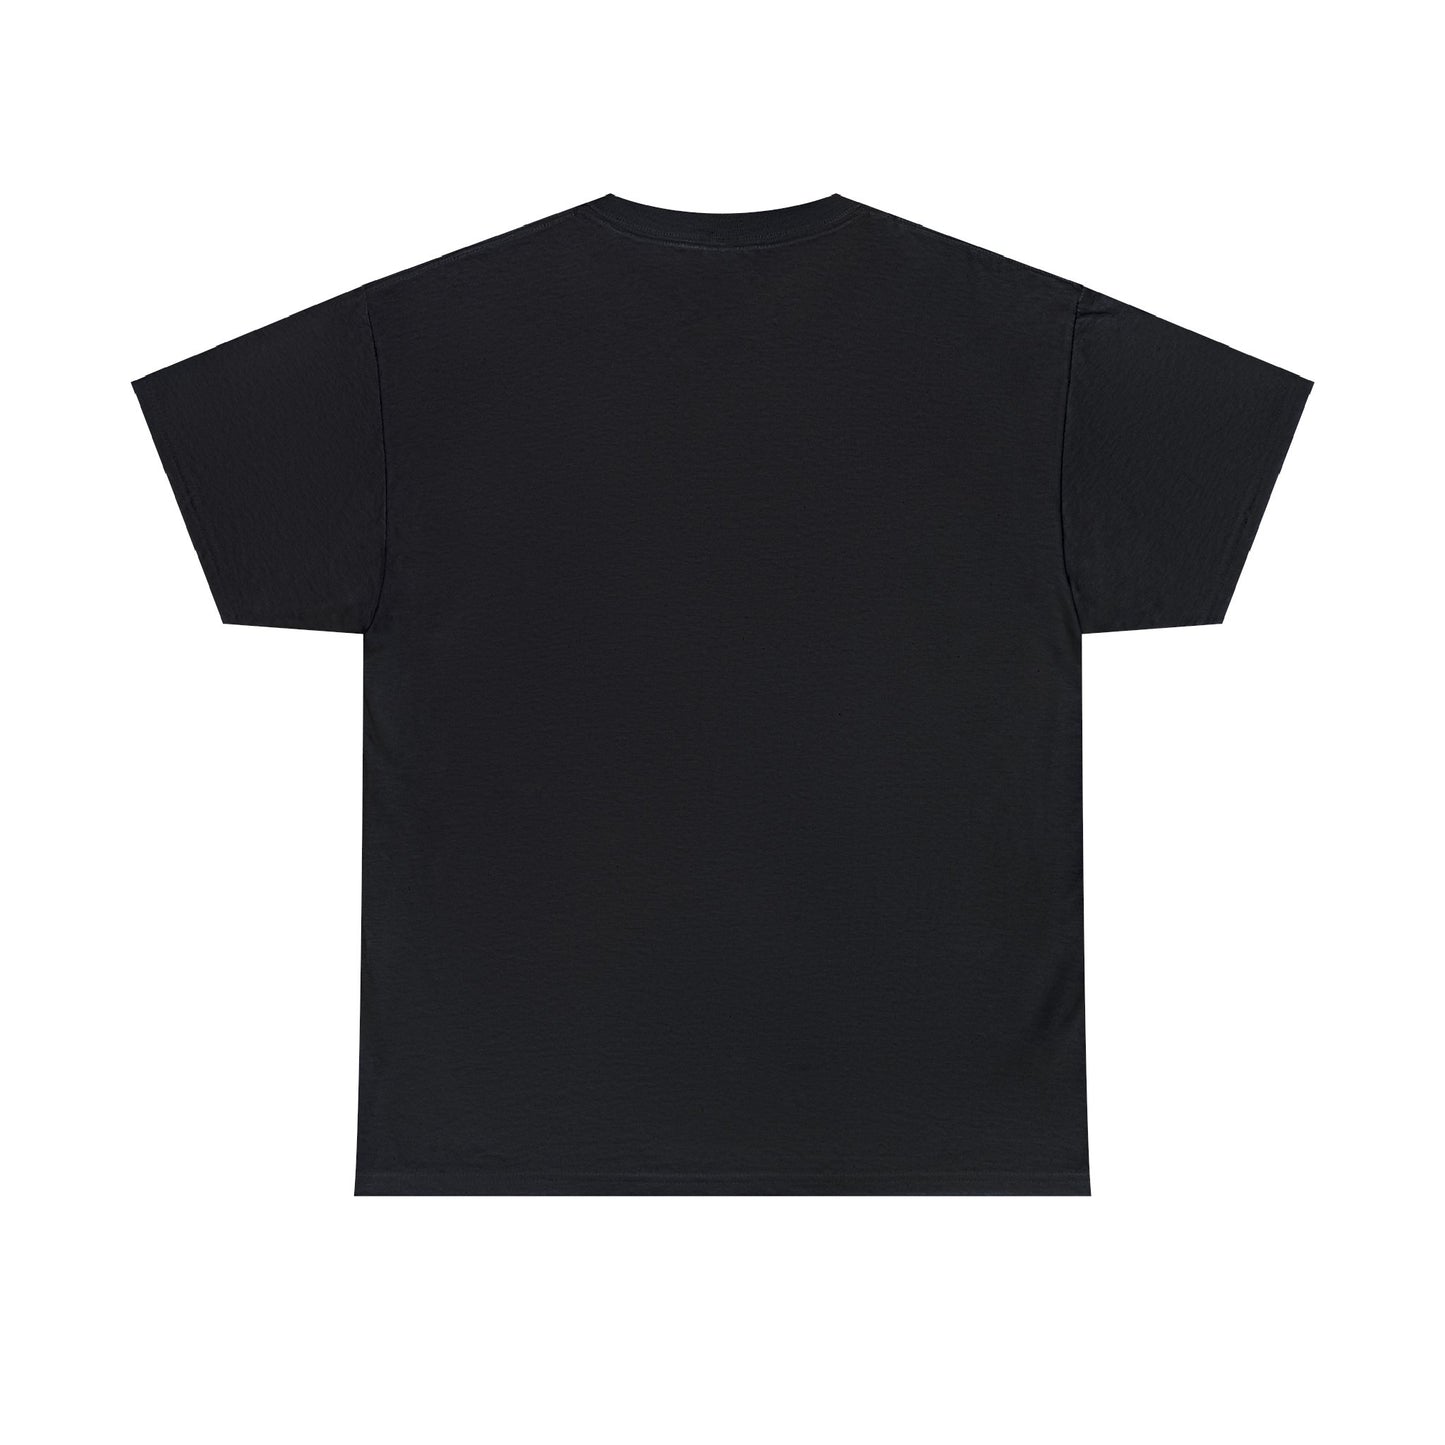 T-Shirt Black Dimenzion X Unisex Heavy Cotton Tee